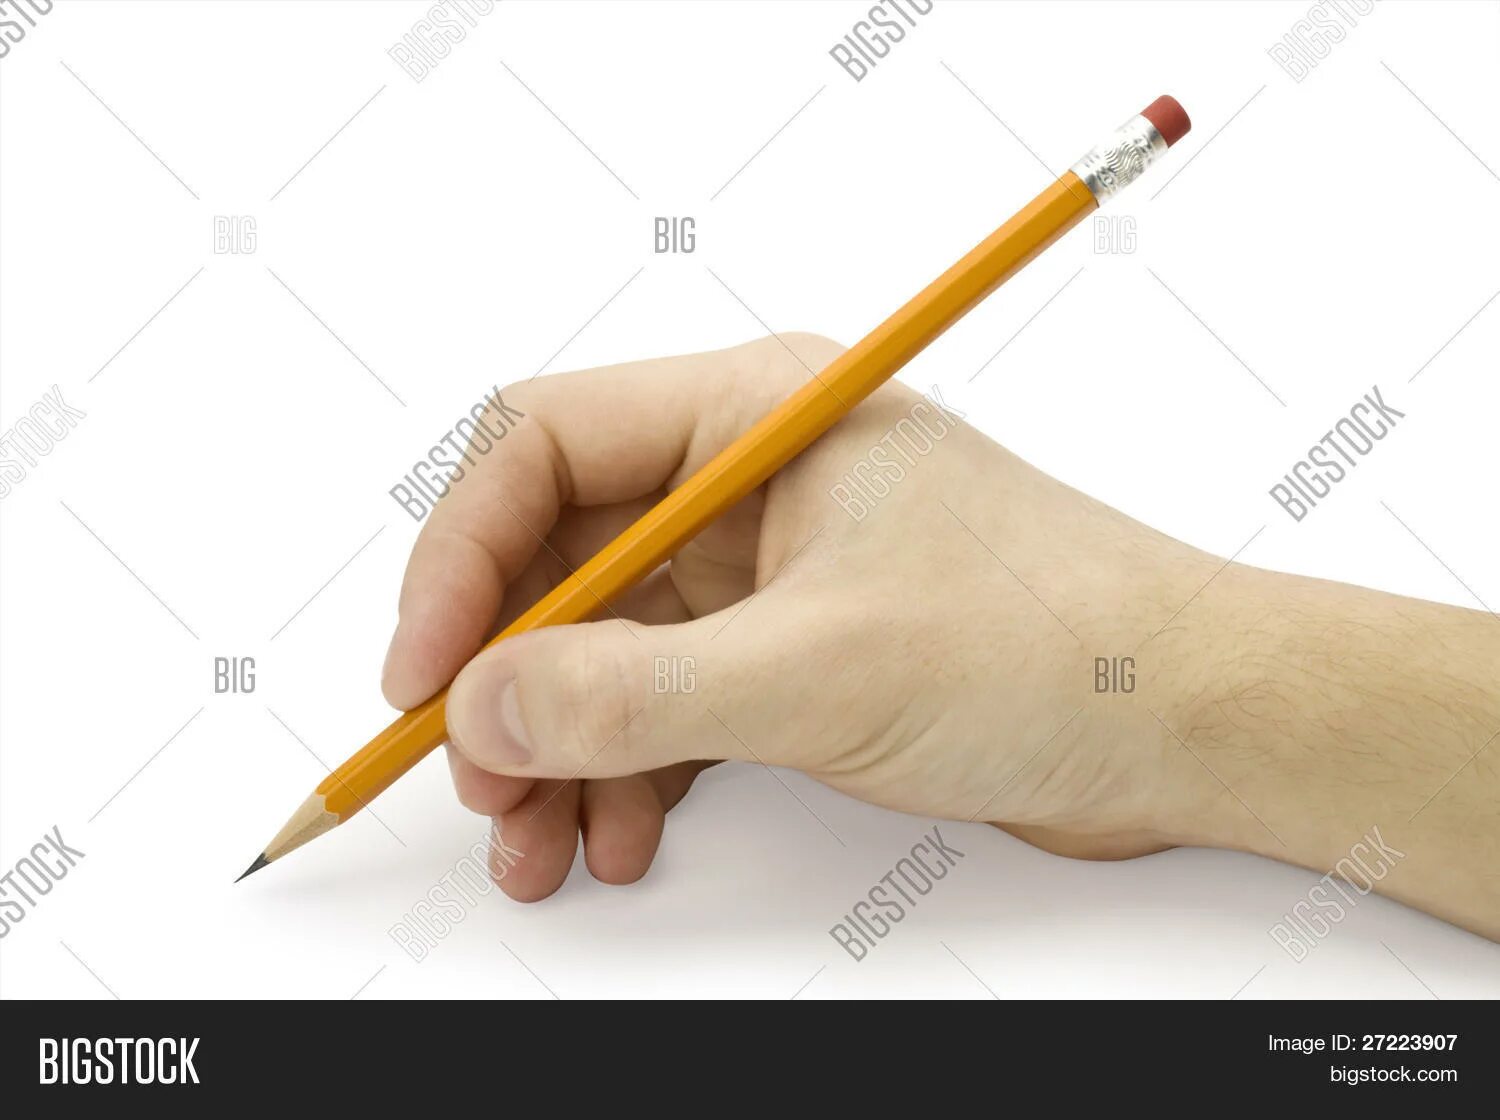 Держит карандаш. Рука держит карандаш. Держит ручку. Рука держит ручку.